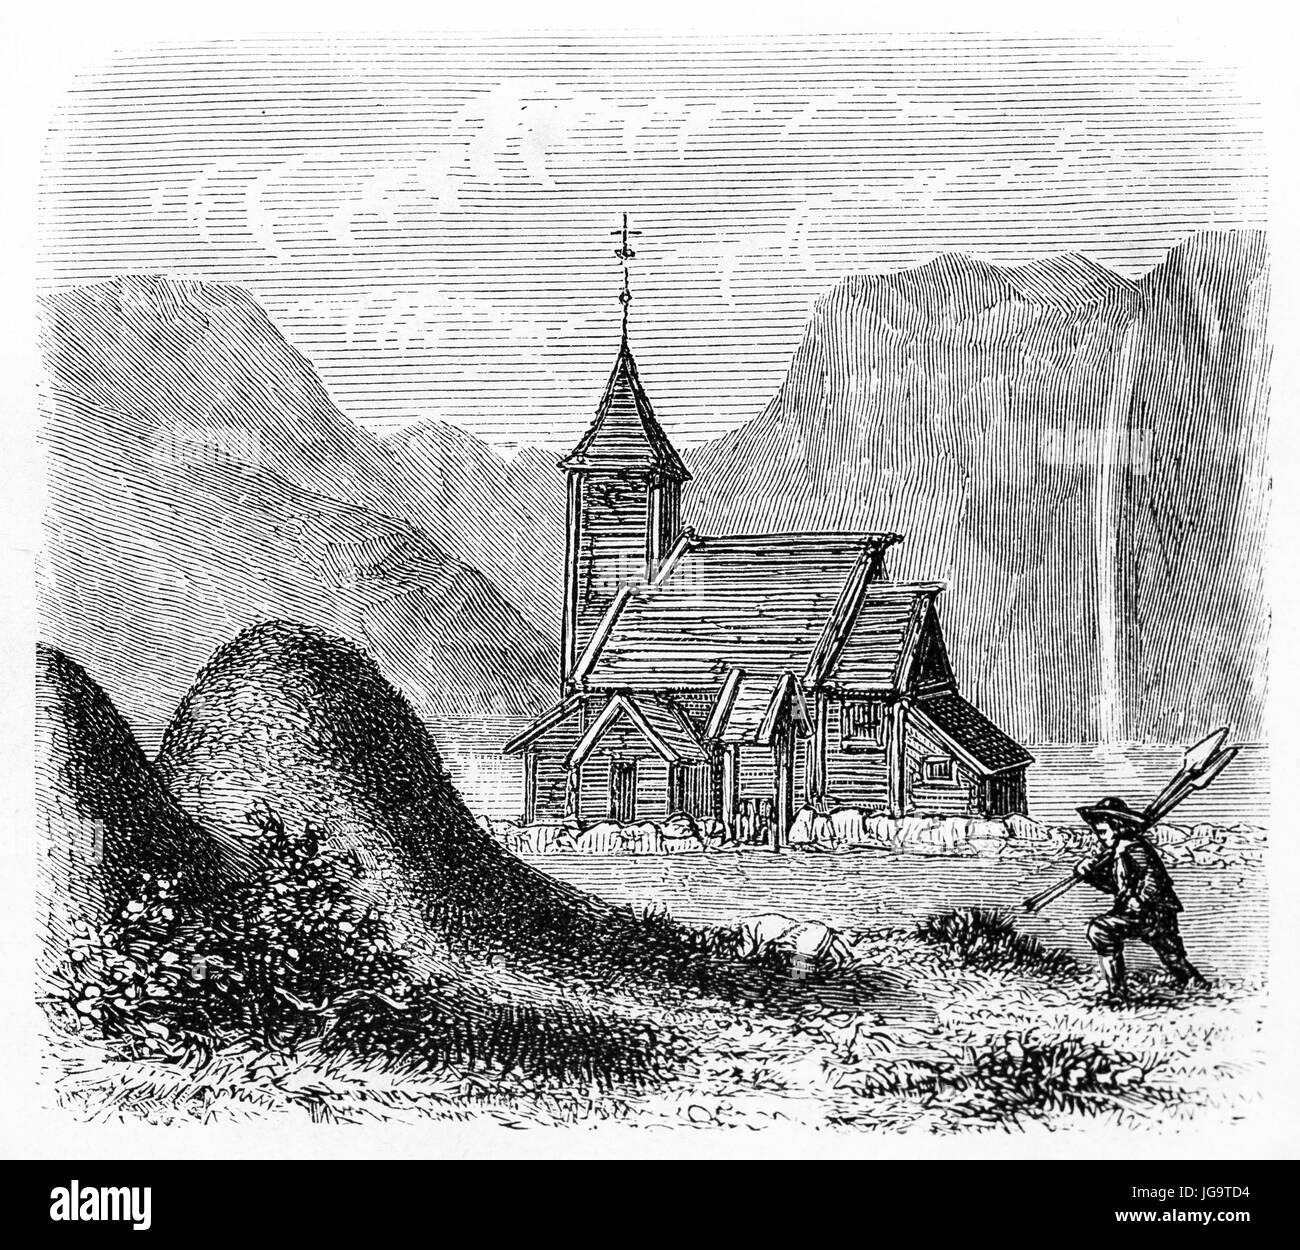 Alte Ansicht von Vangsnaes Stabkirche, Norwegen (zur Zeit ersetzt durch ein gemauertes Gebäude). Alte graue Ton Radierung Stil Kunst von Huyot, 1861 Stockfoto